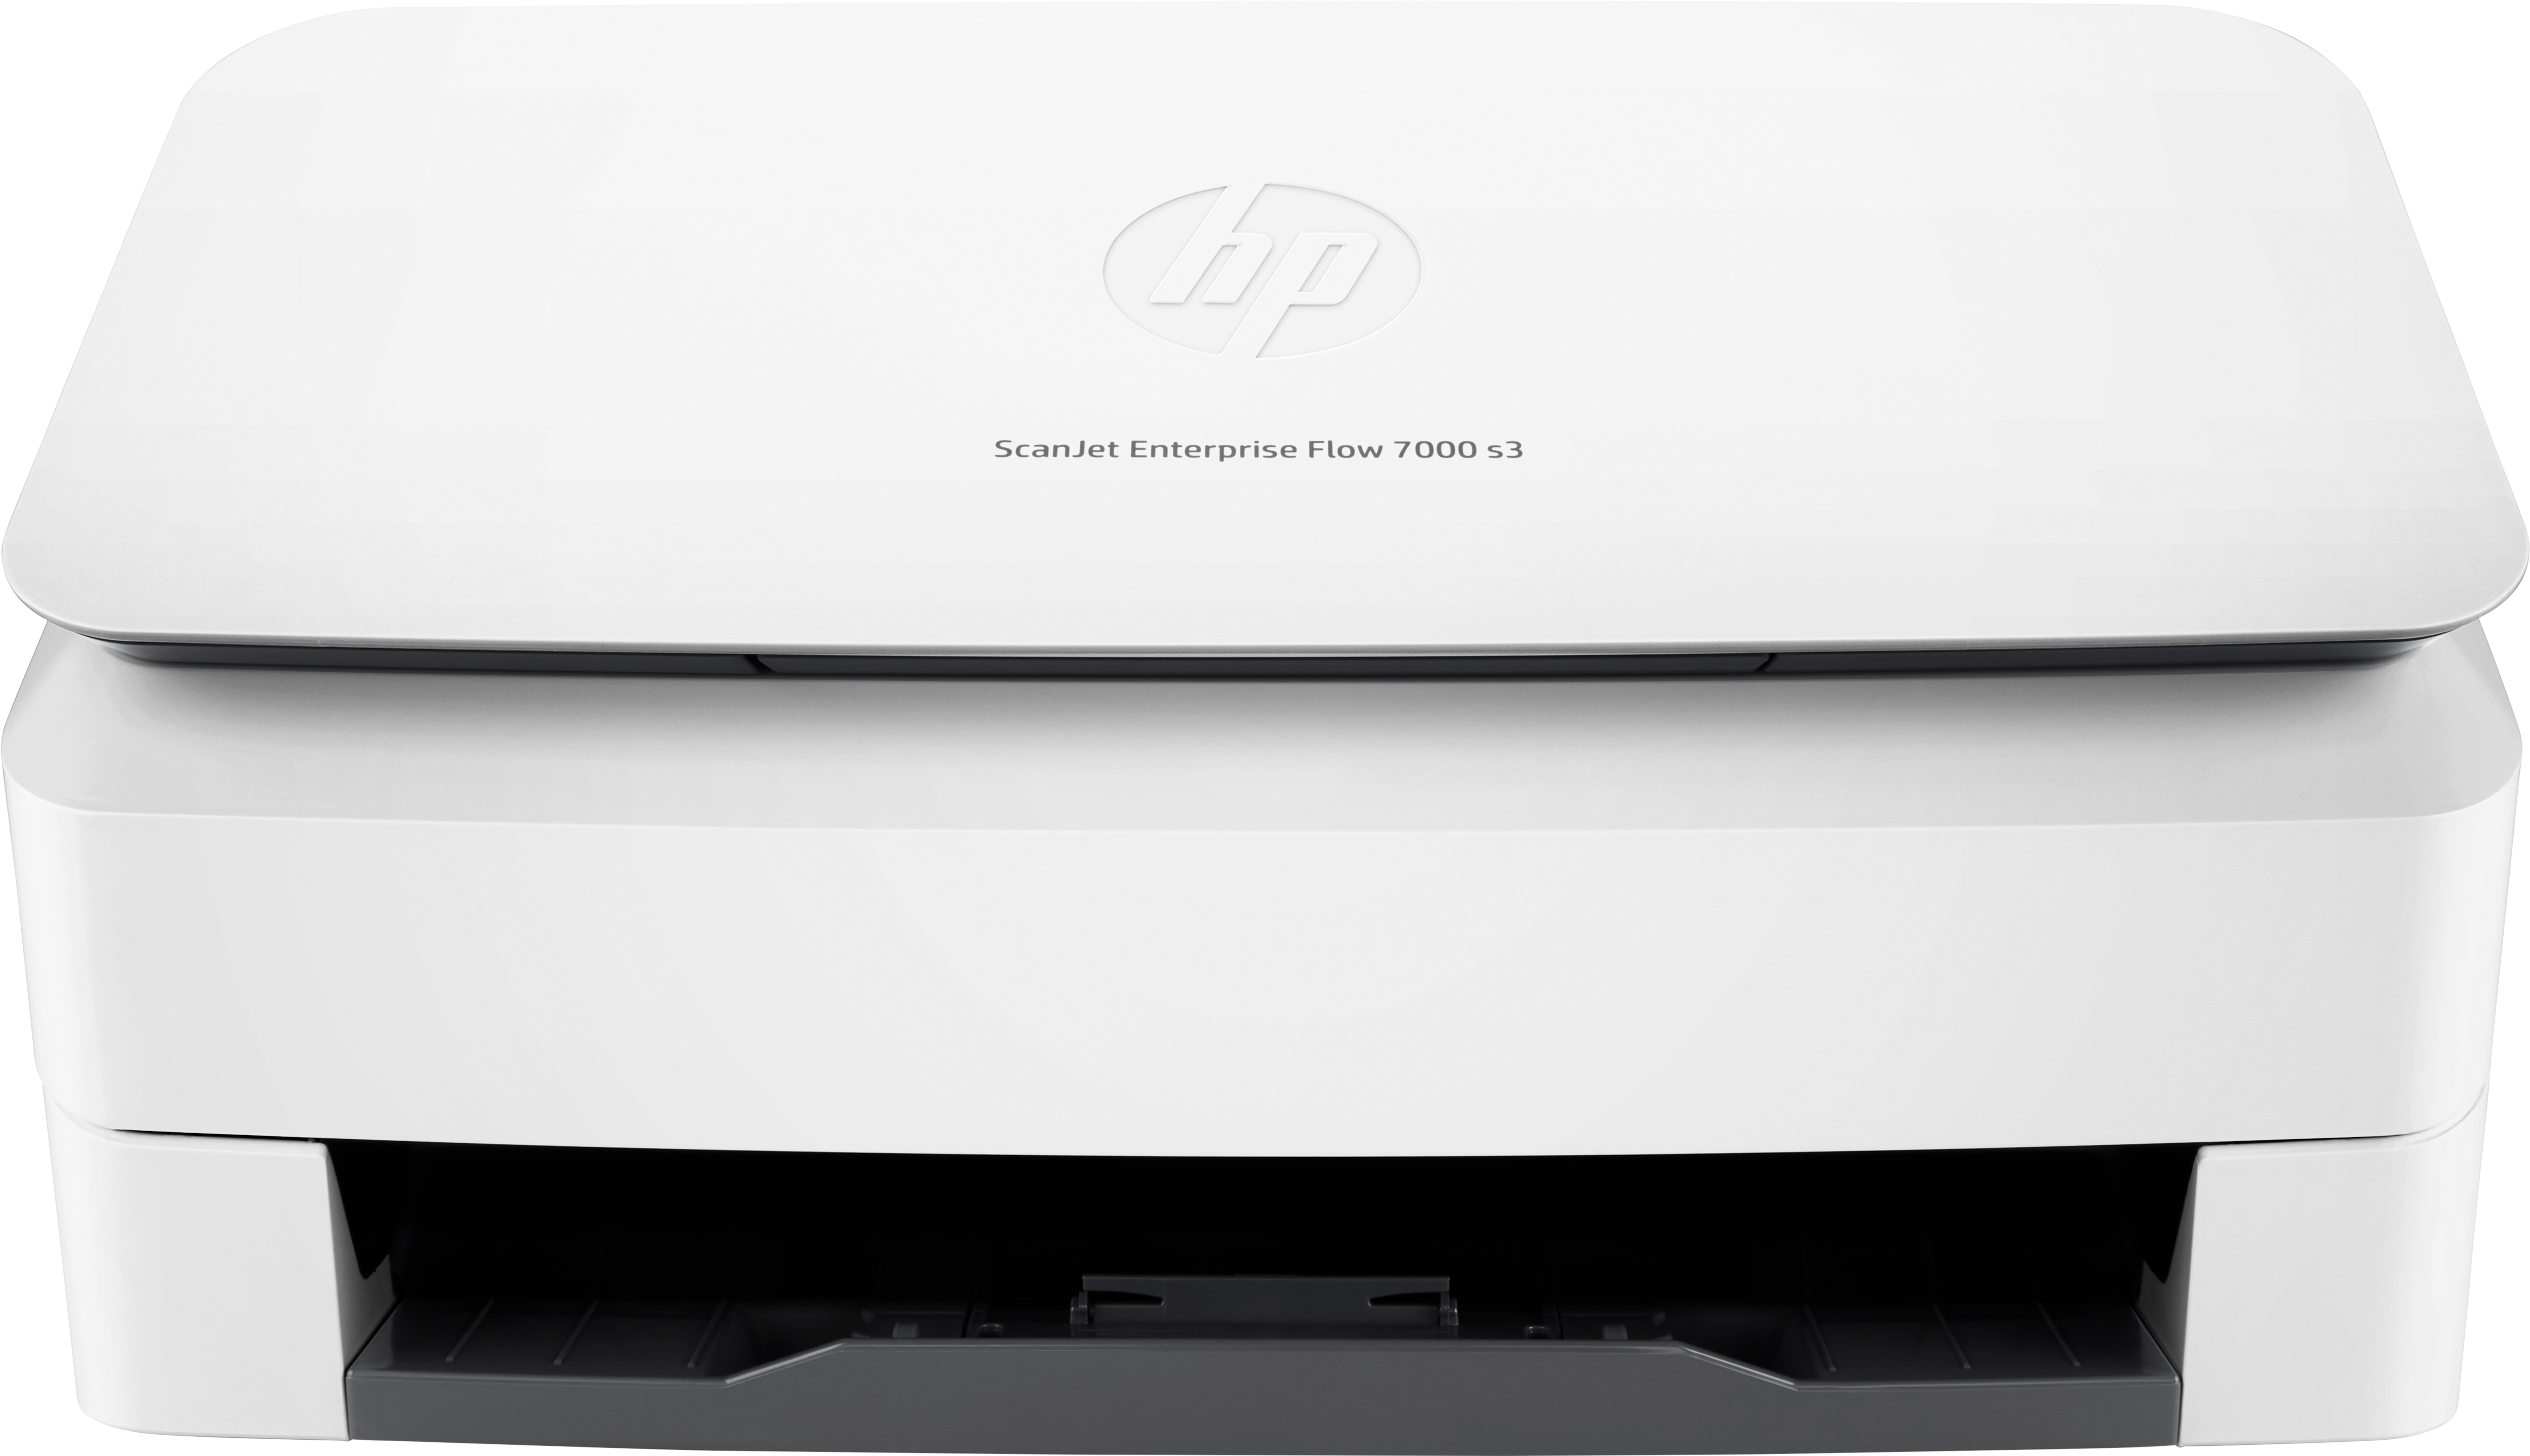 Escaner Hp Enterprise Flow 7000 S3 Duplex Usb 3.0 Adf 7500 Pag L2757A